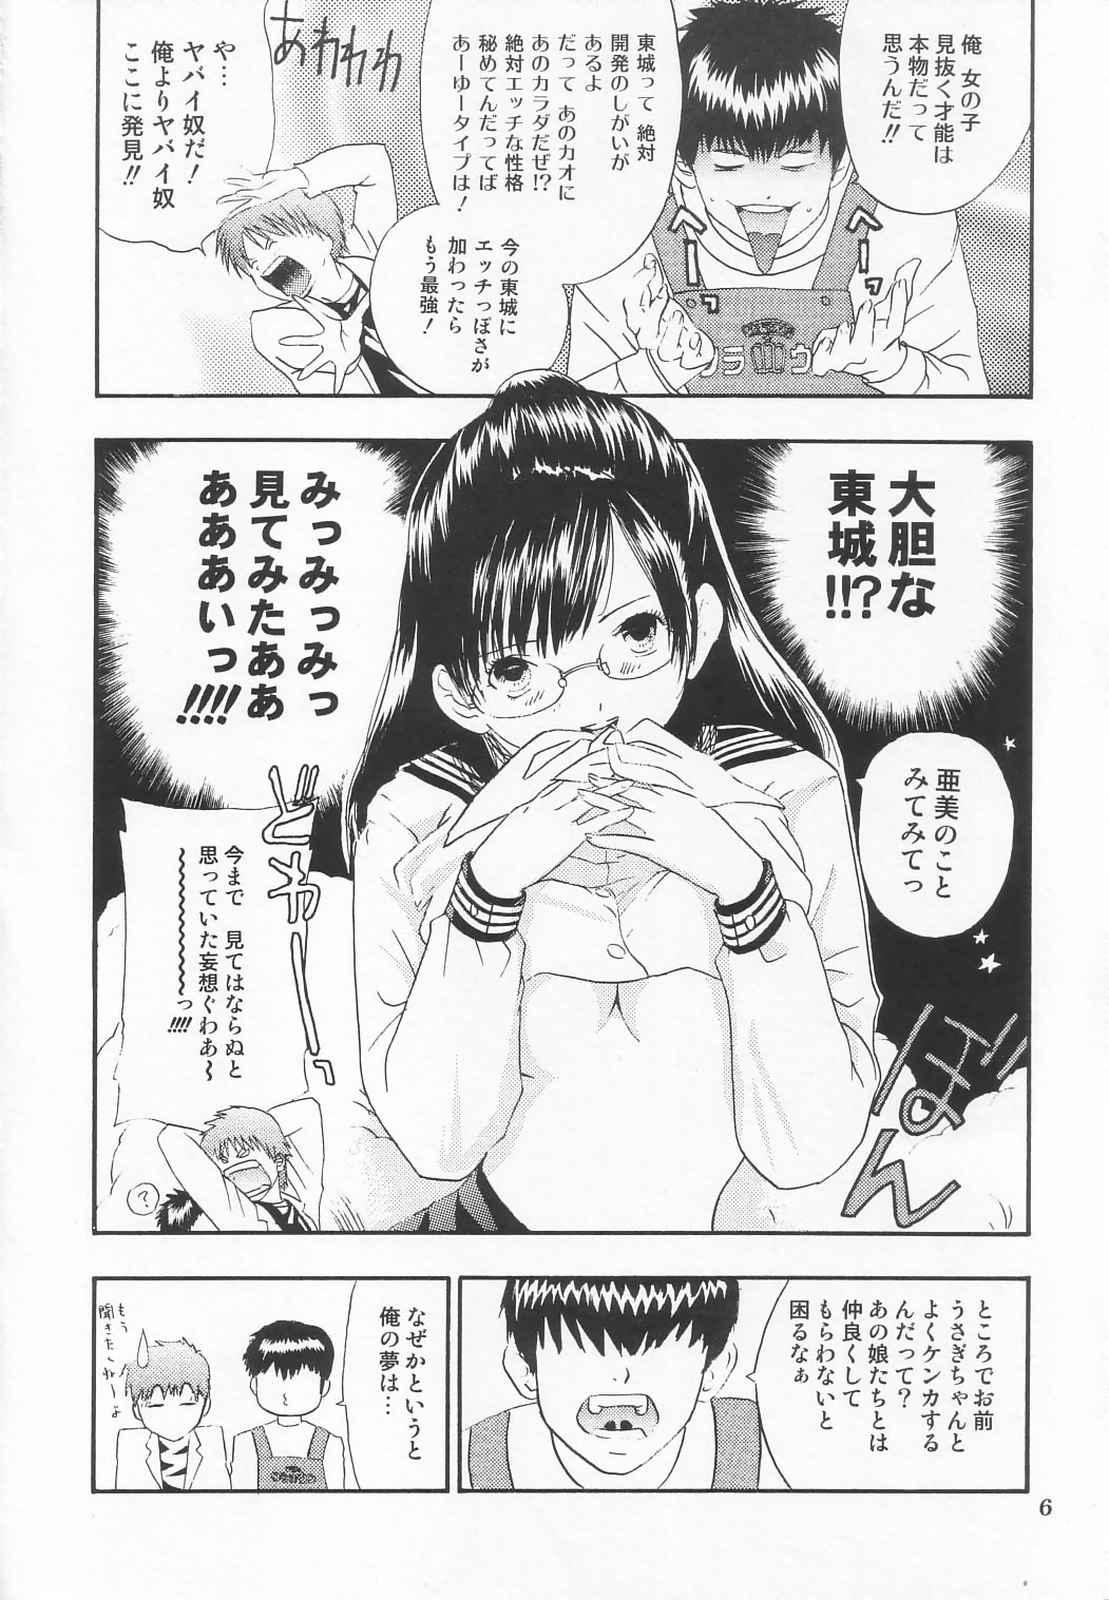 Danish Tokusatsu Magazine x 2003 Fuyu Gou - Sailor moon Ichigo 100 Nena - Page 8